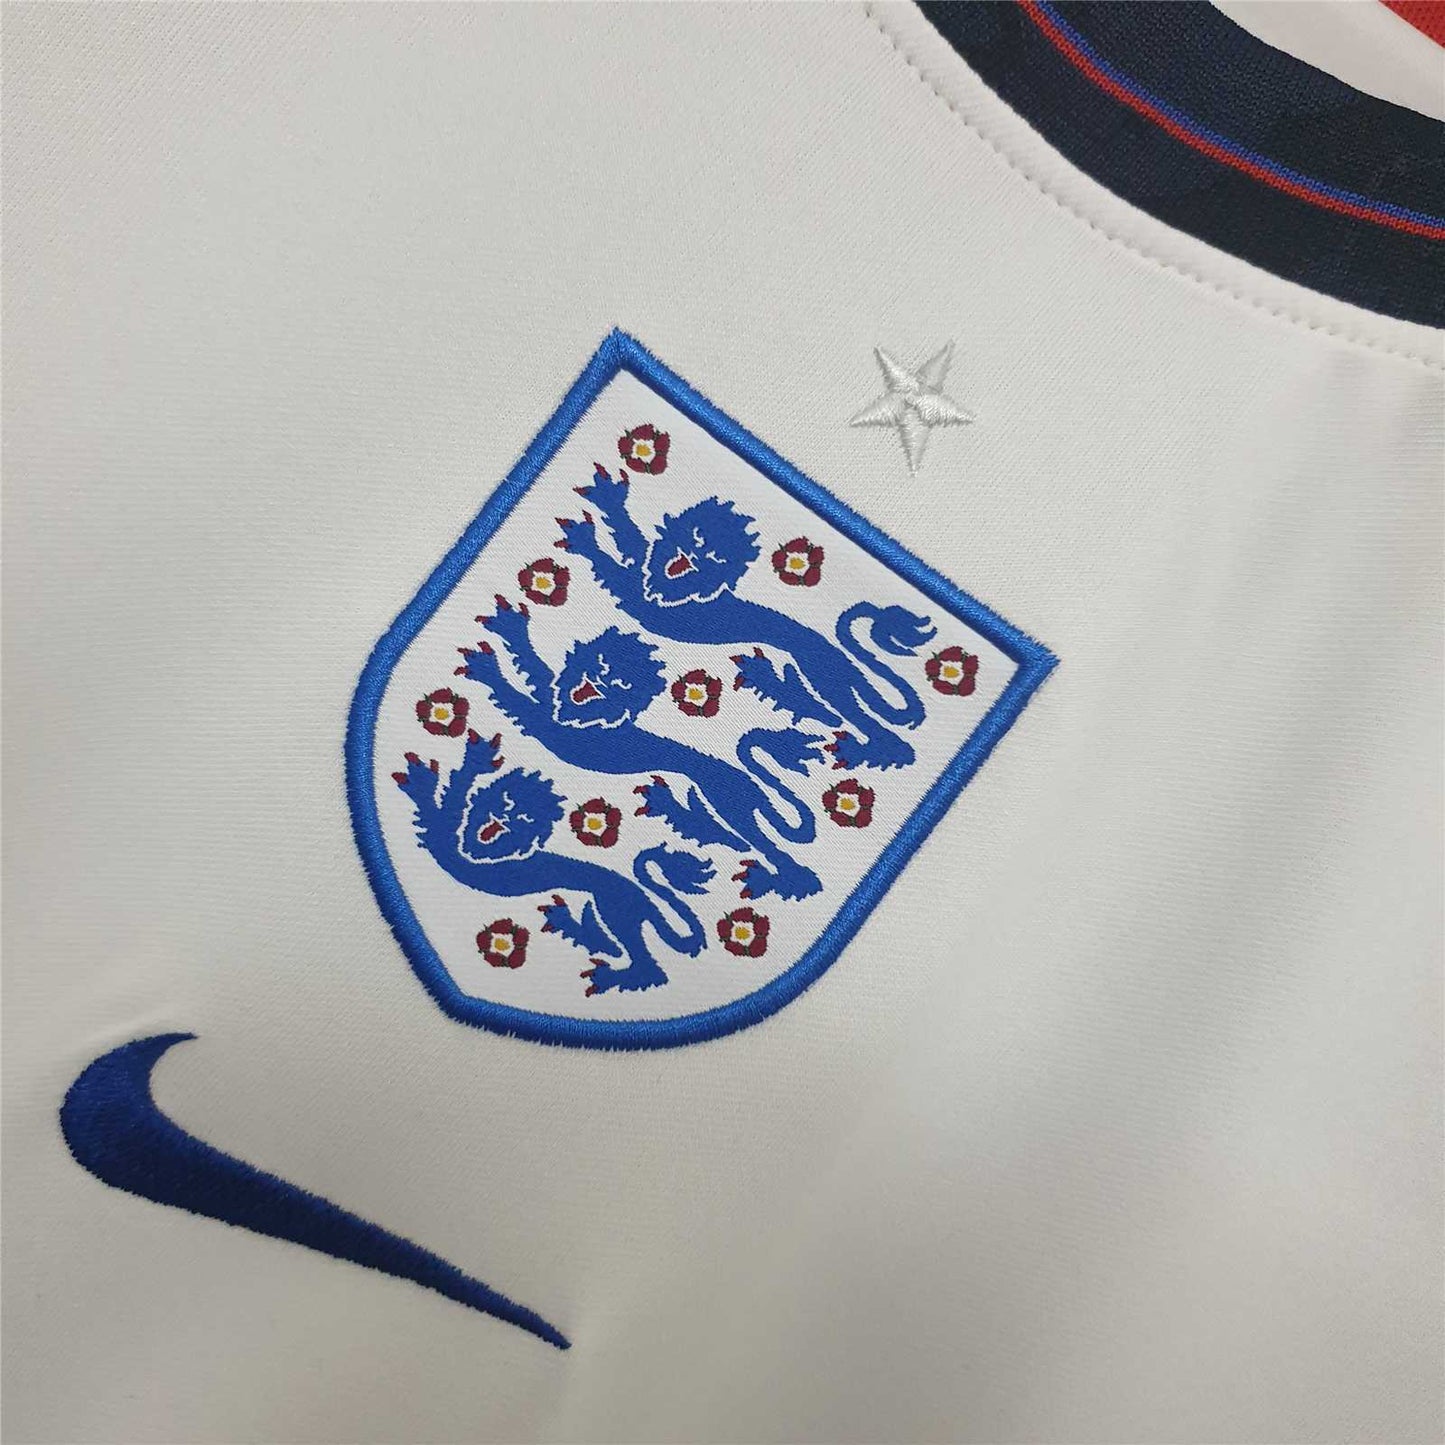 England 2020 Home Shirt